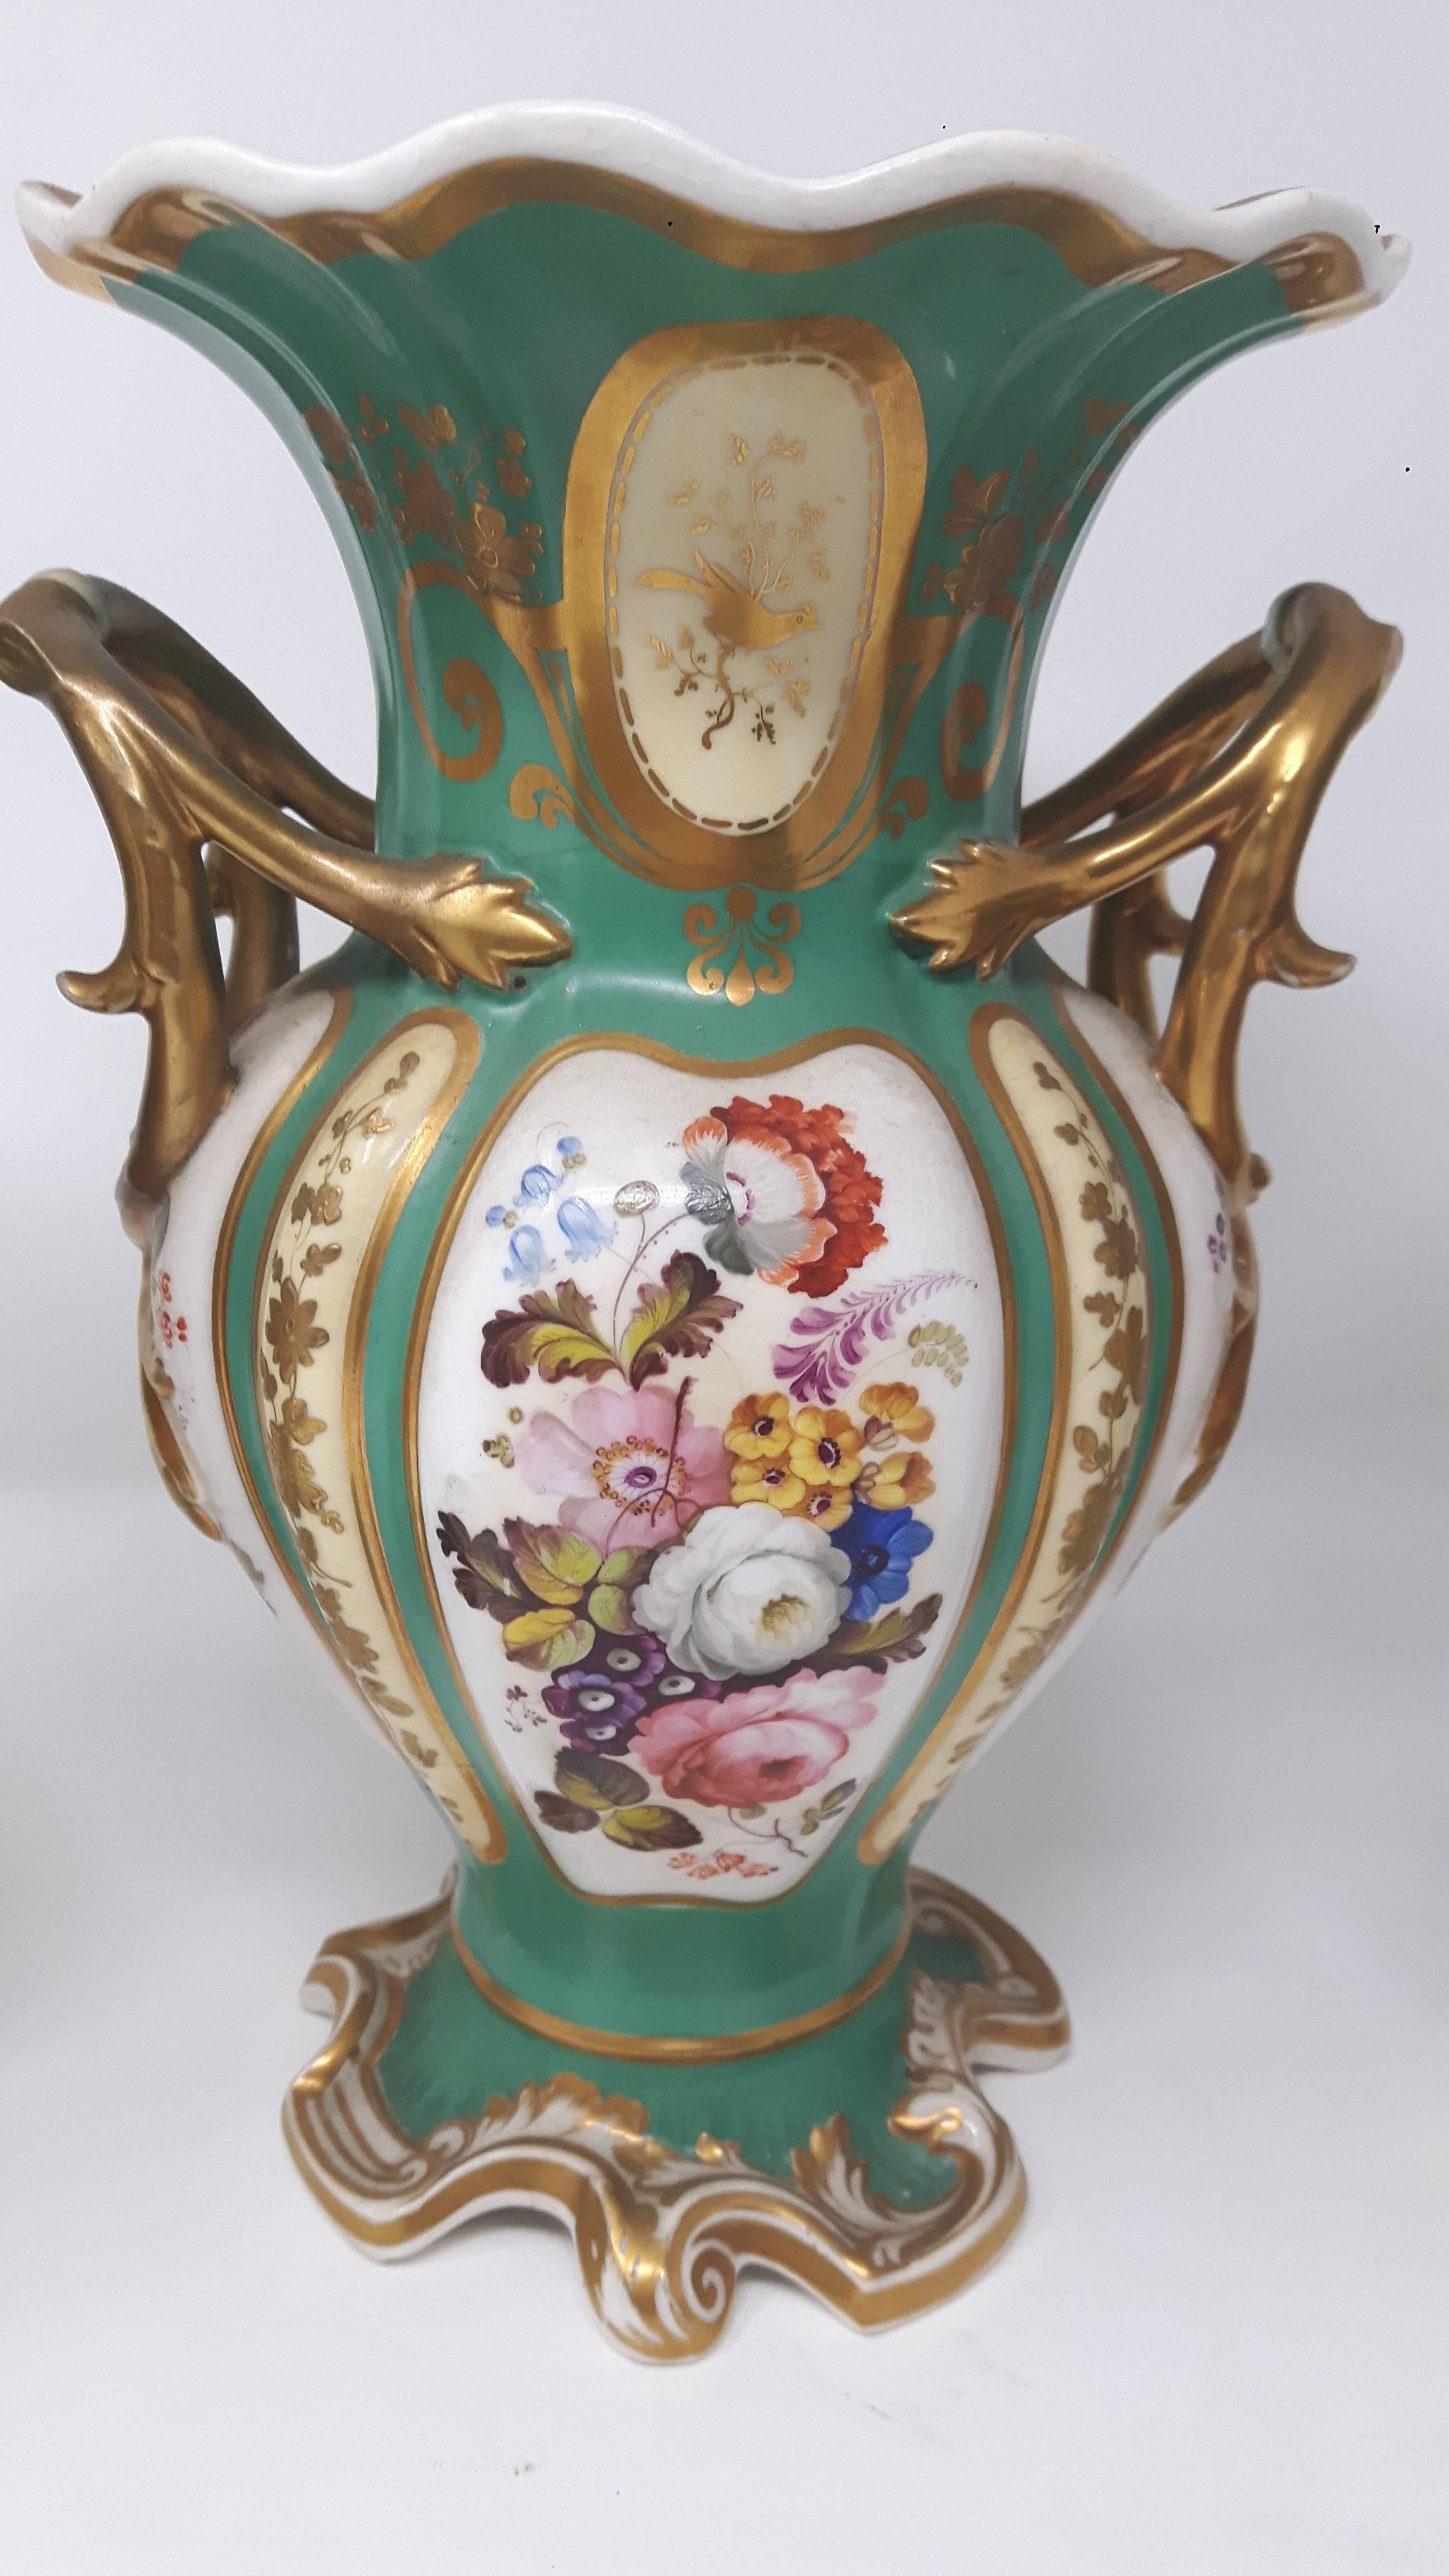 Une garniture de trois vases Coalport, chacun finement peint avec des scènes de bouquet de fleurs, sur fond vert pomme et doré.